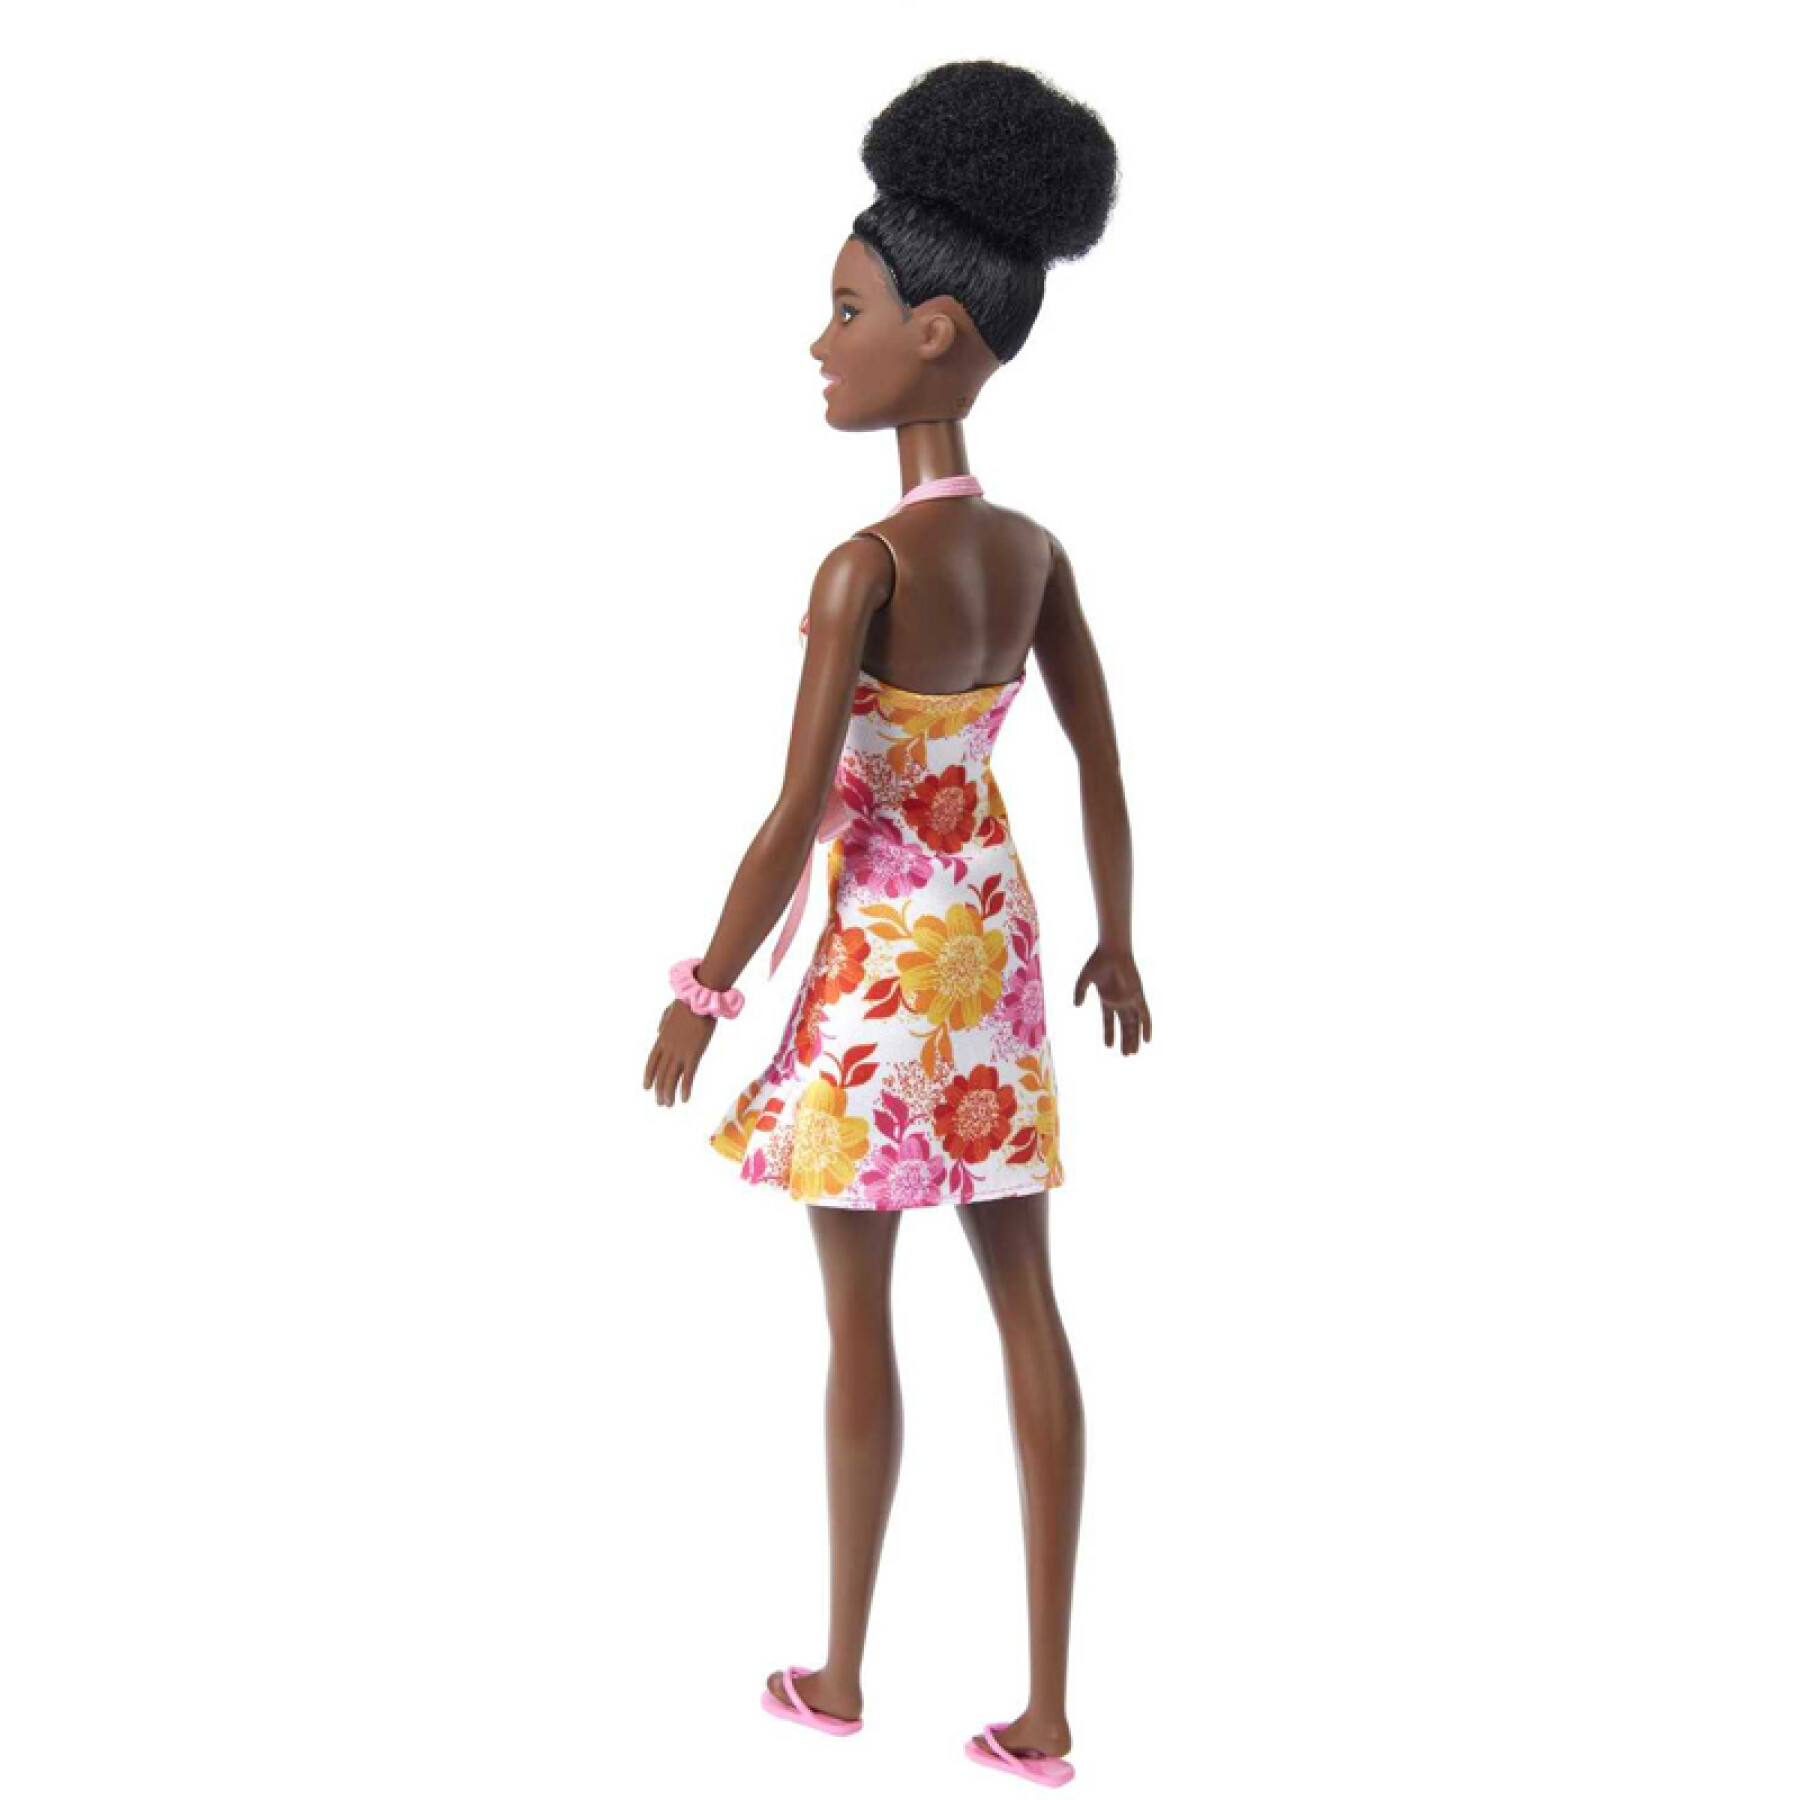 Barbiepuppe liebt braunen Locean Mattel France